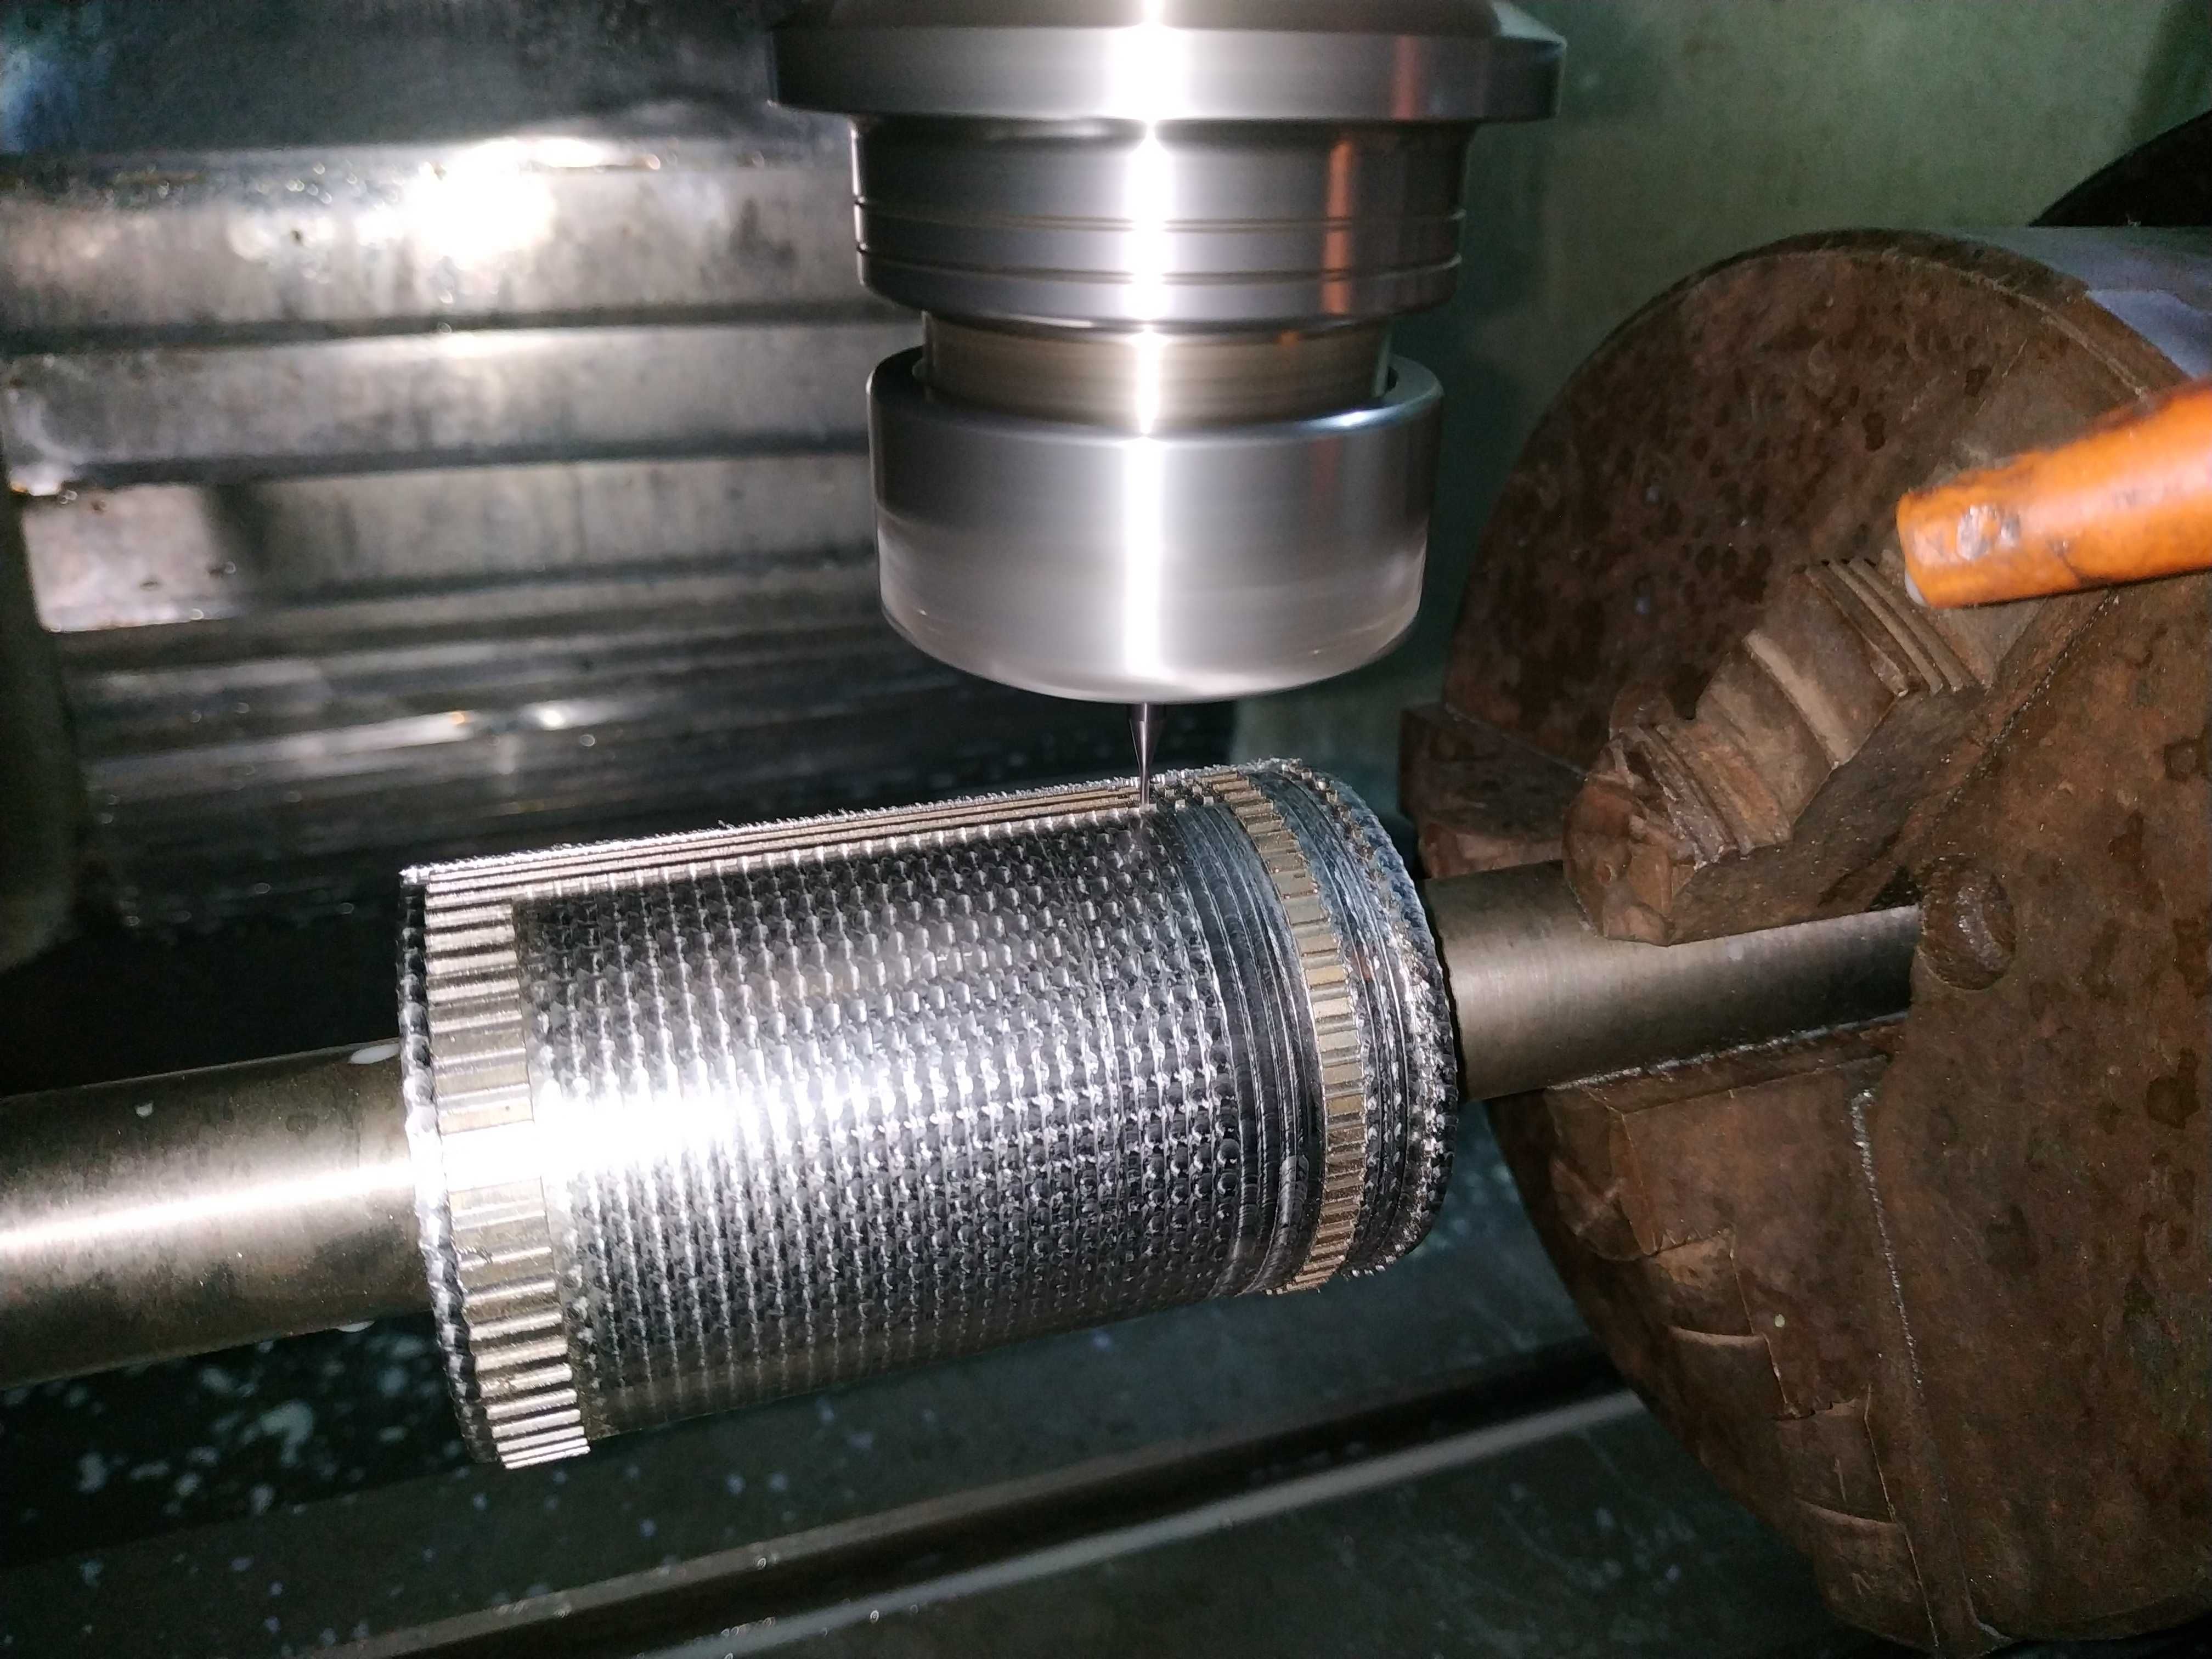 Обработка на станках ЧПУ CNC металлу камню дереву фрезеровка токарка